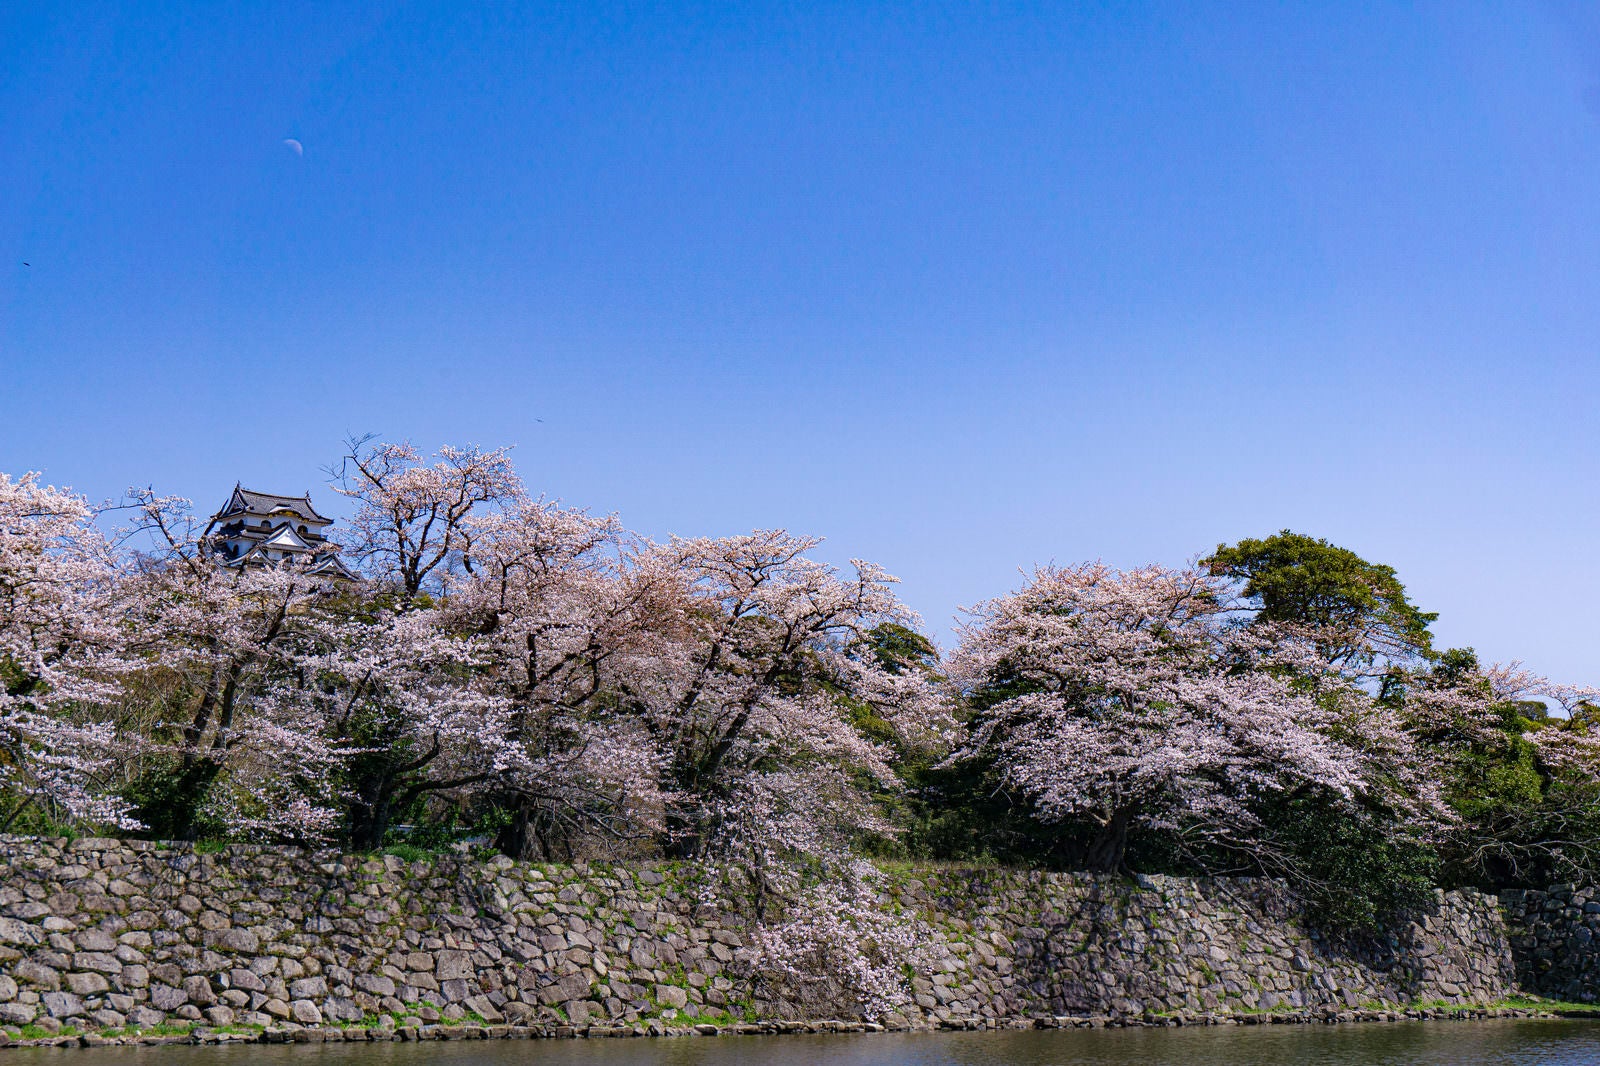 「桜の上に見える彦根城天守とその頭上に残る朝の月」の写真